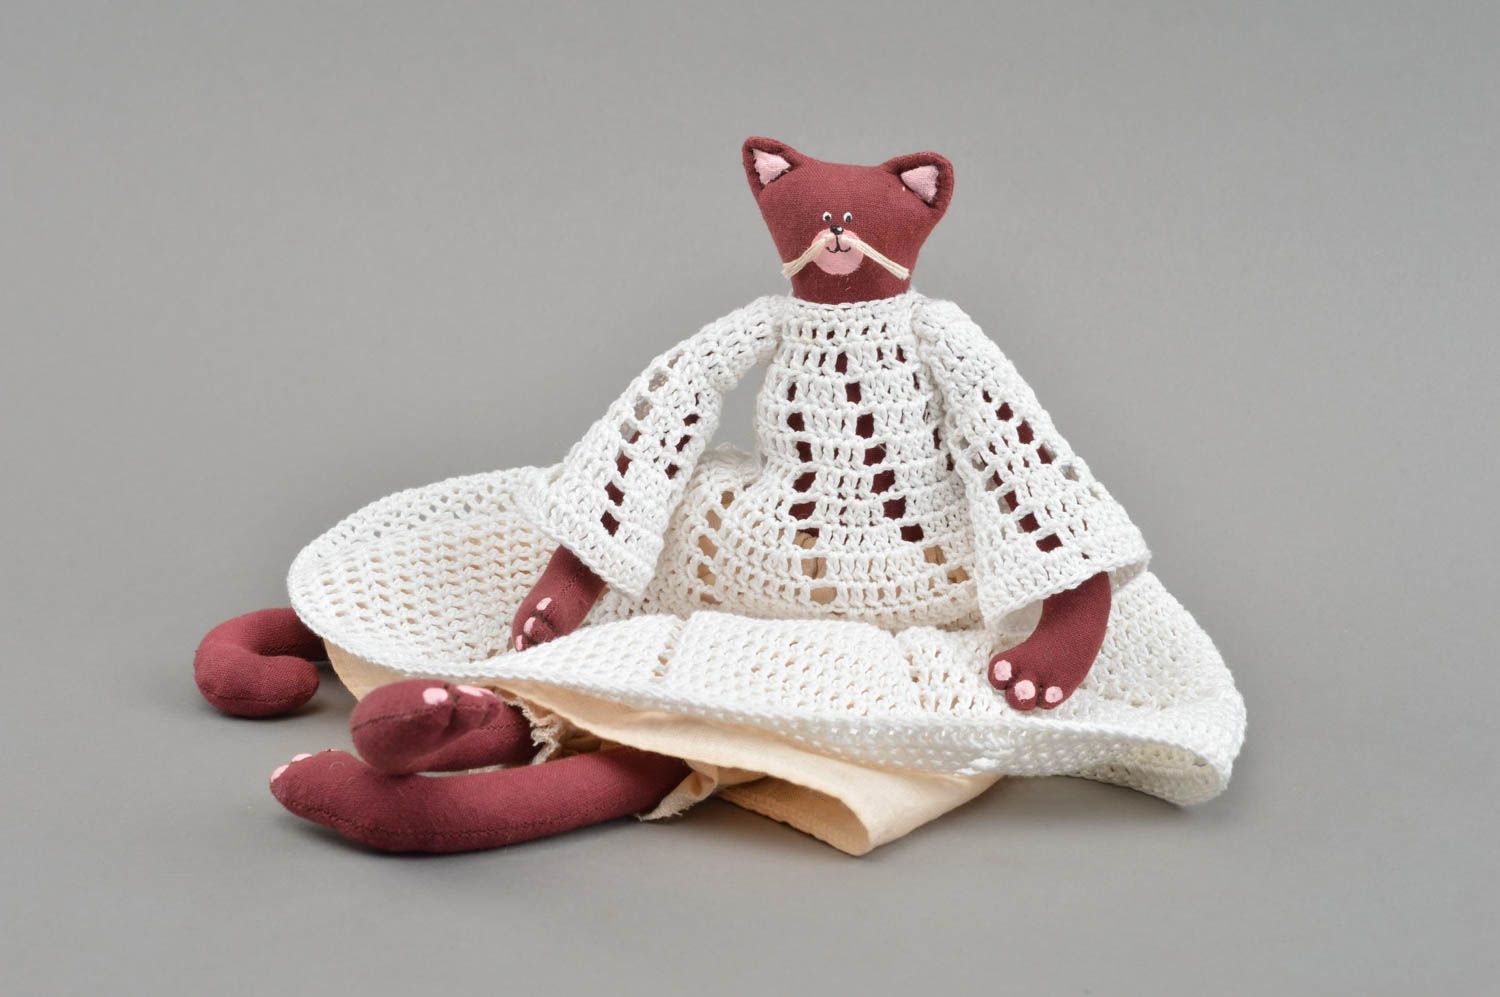 Тканевая игрушка кошка бордовая в вязаном платье красивая небольшая хэнд мейд фото 3